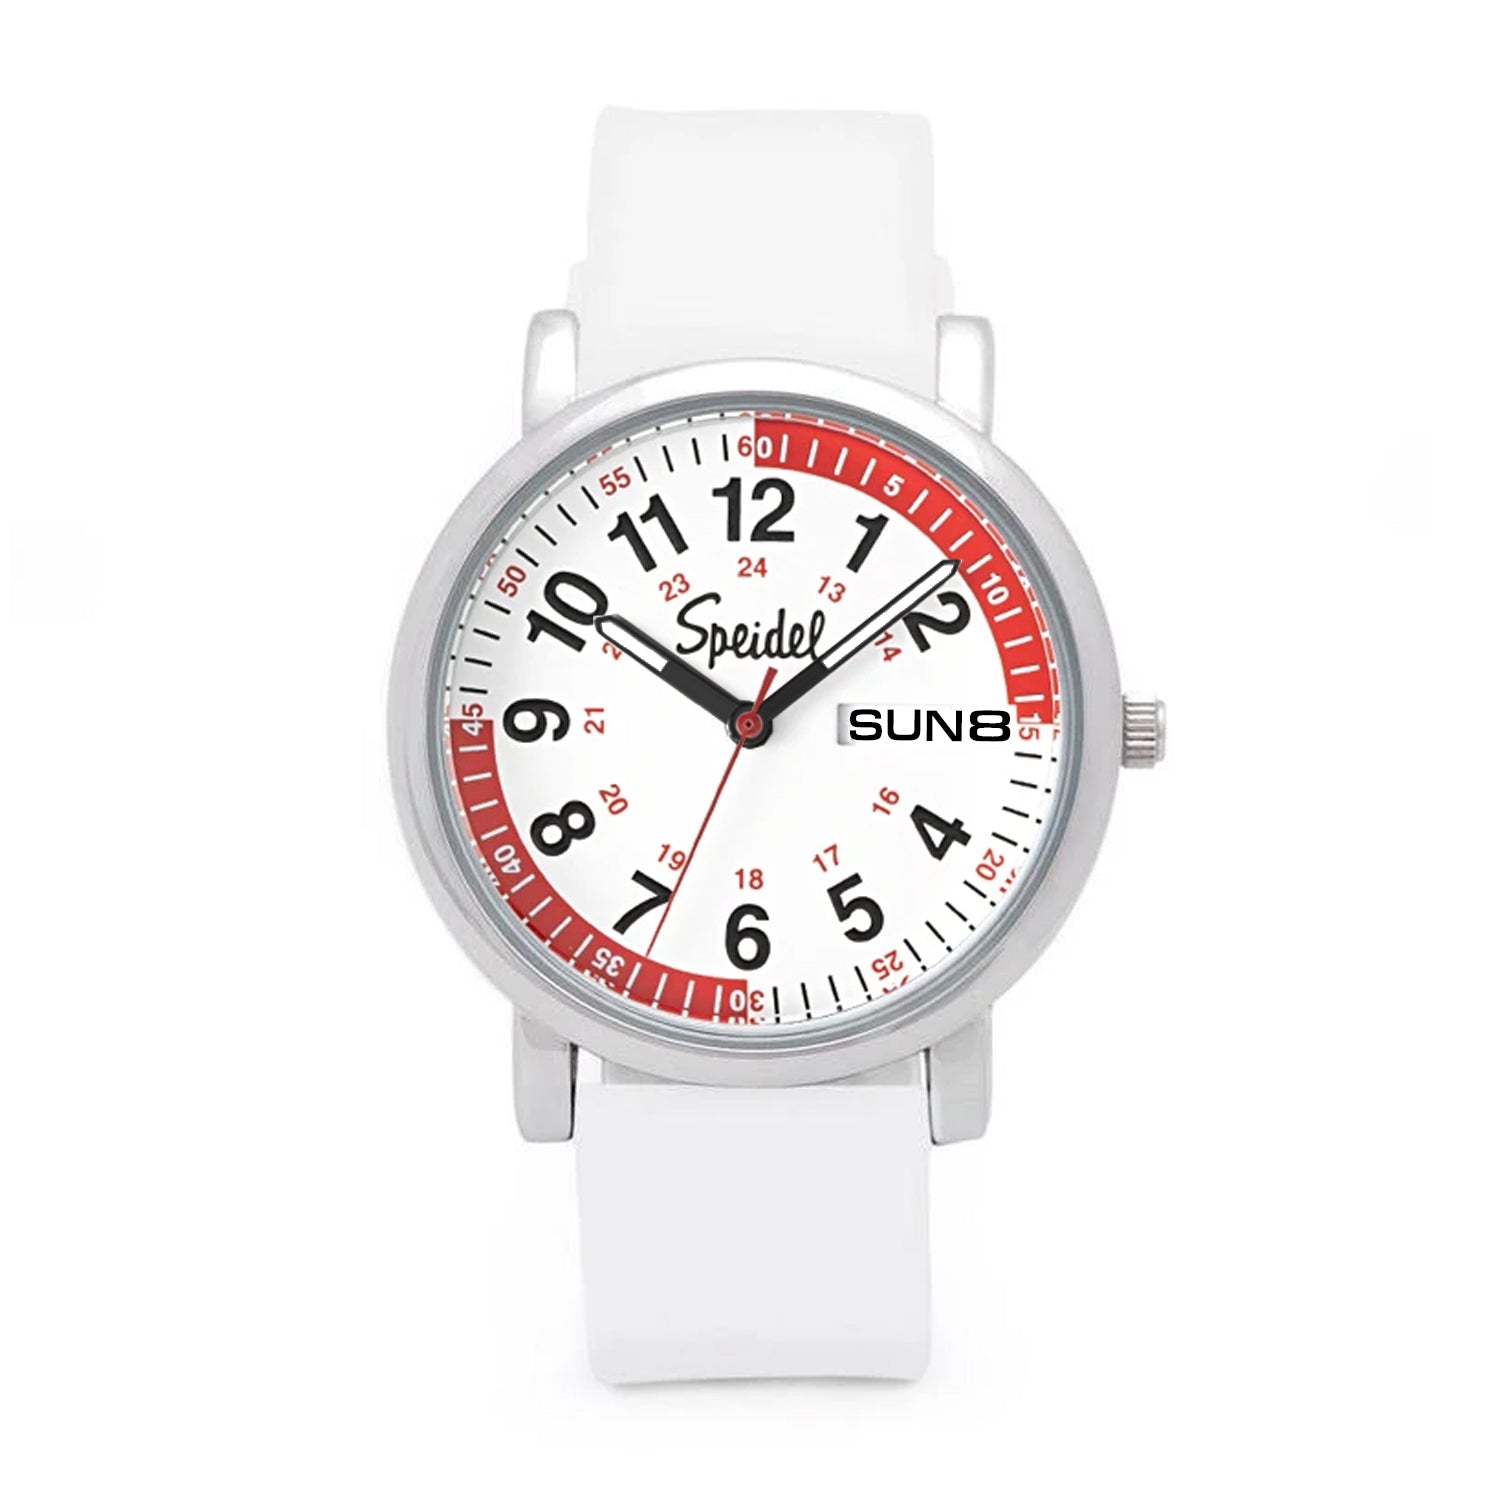 Scrub 30 Pulsometer Watch, Multi Color Scrub Watch For Nurses | Speidel